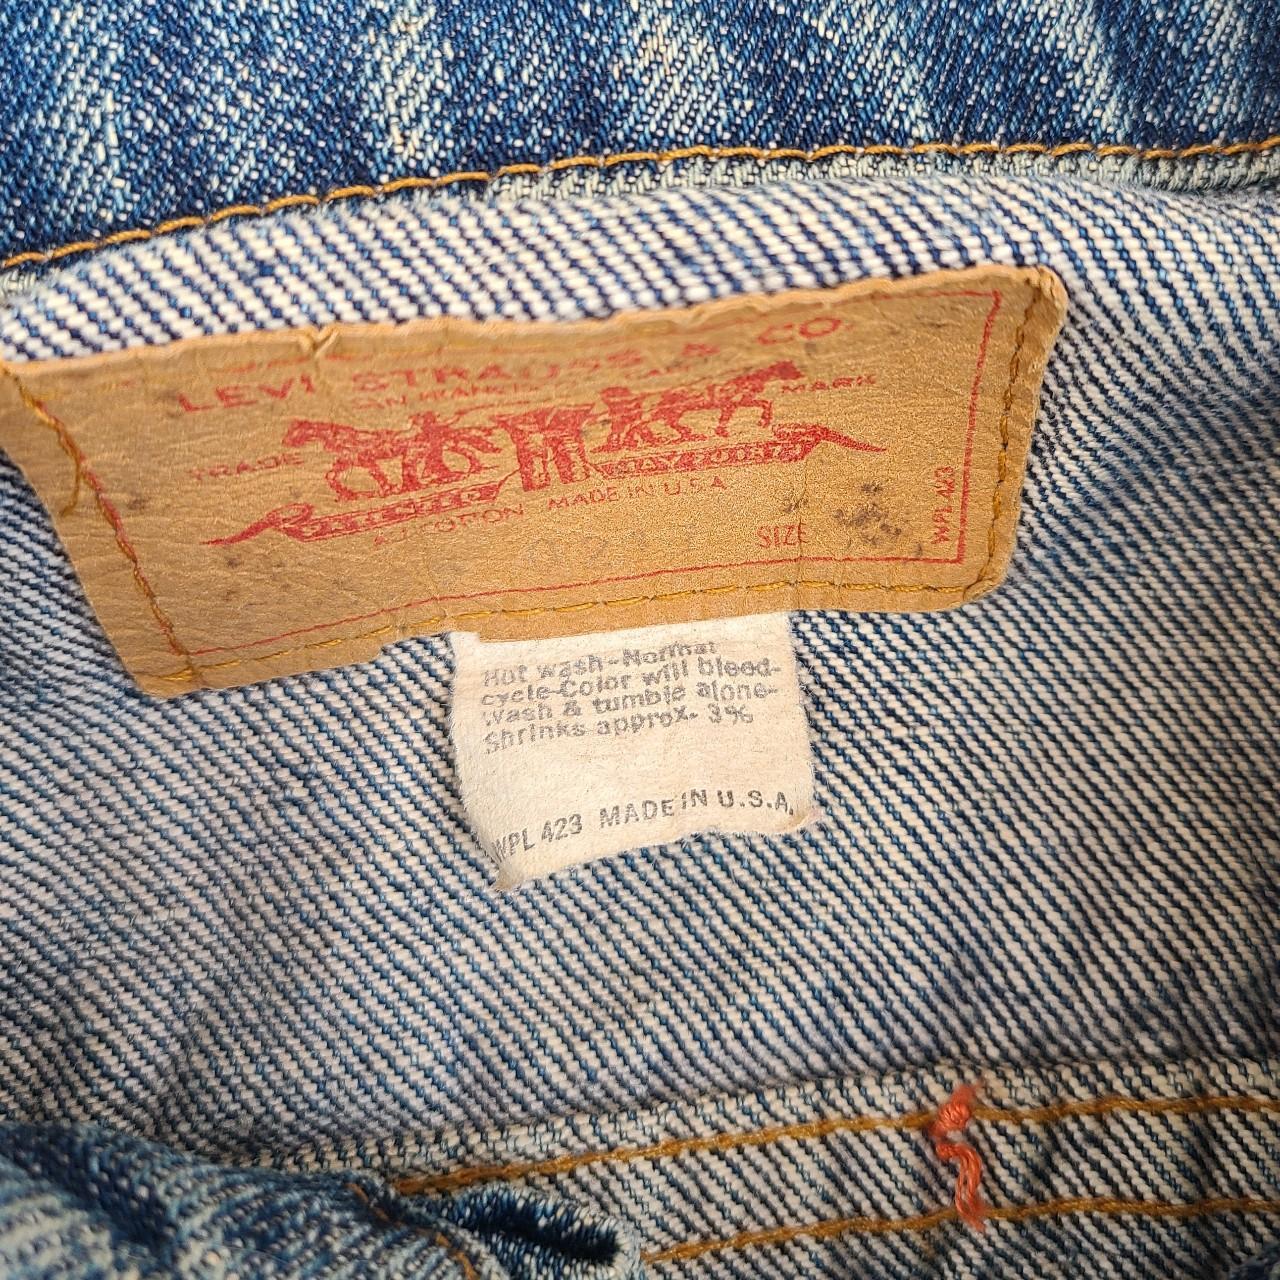 Vintage Levi's denim jacket wpl 423 sz M made in USA... - Depop